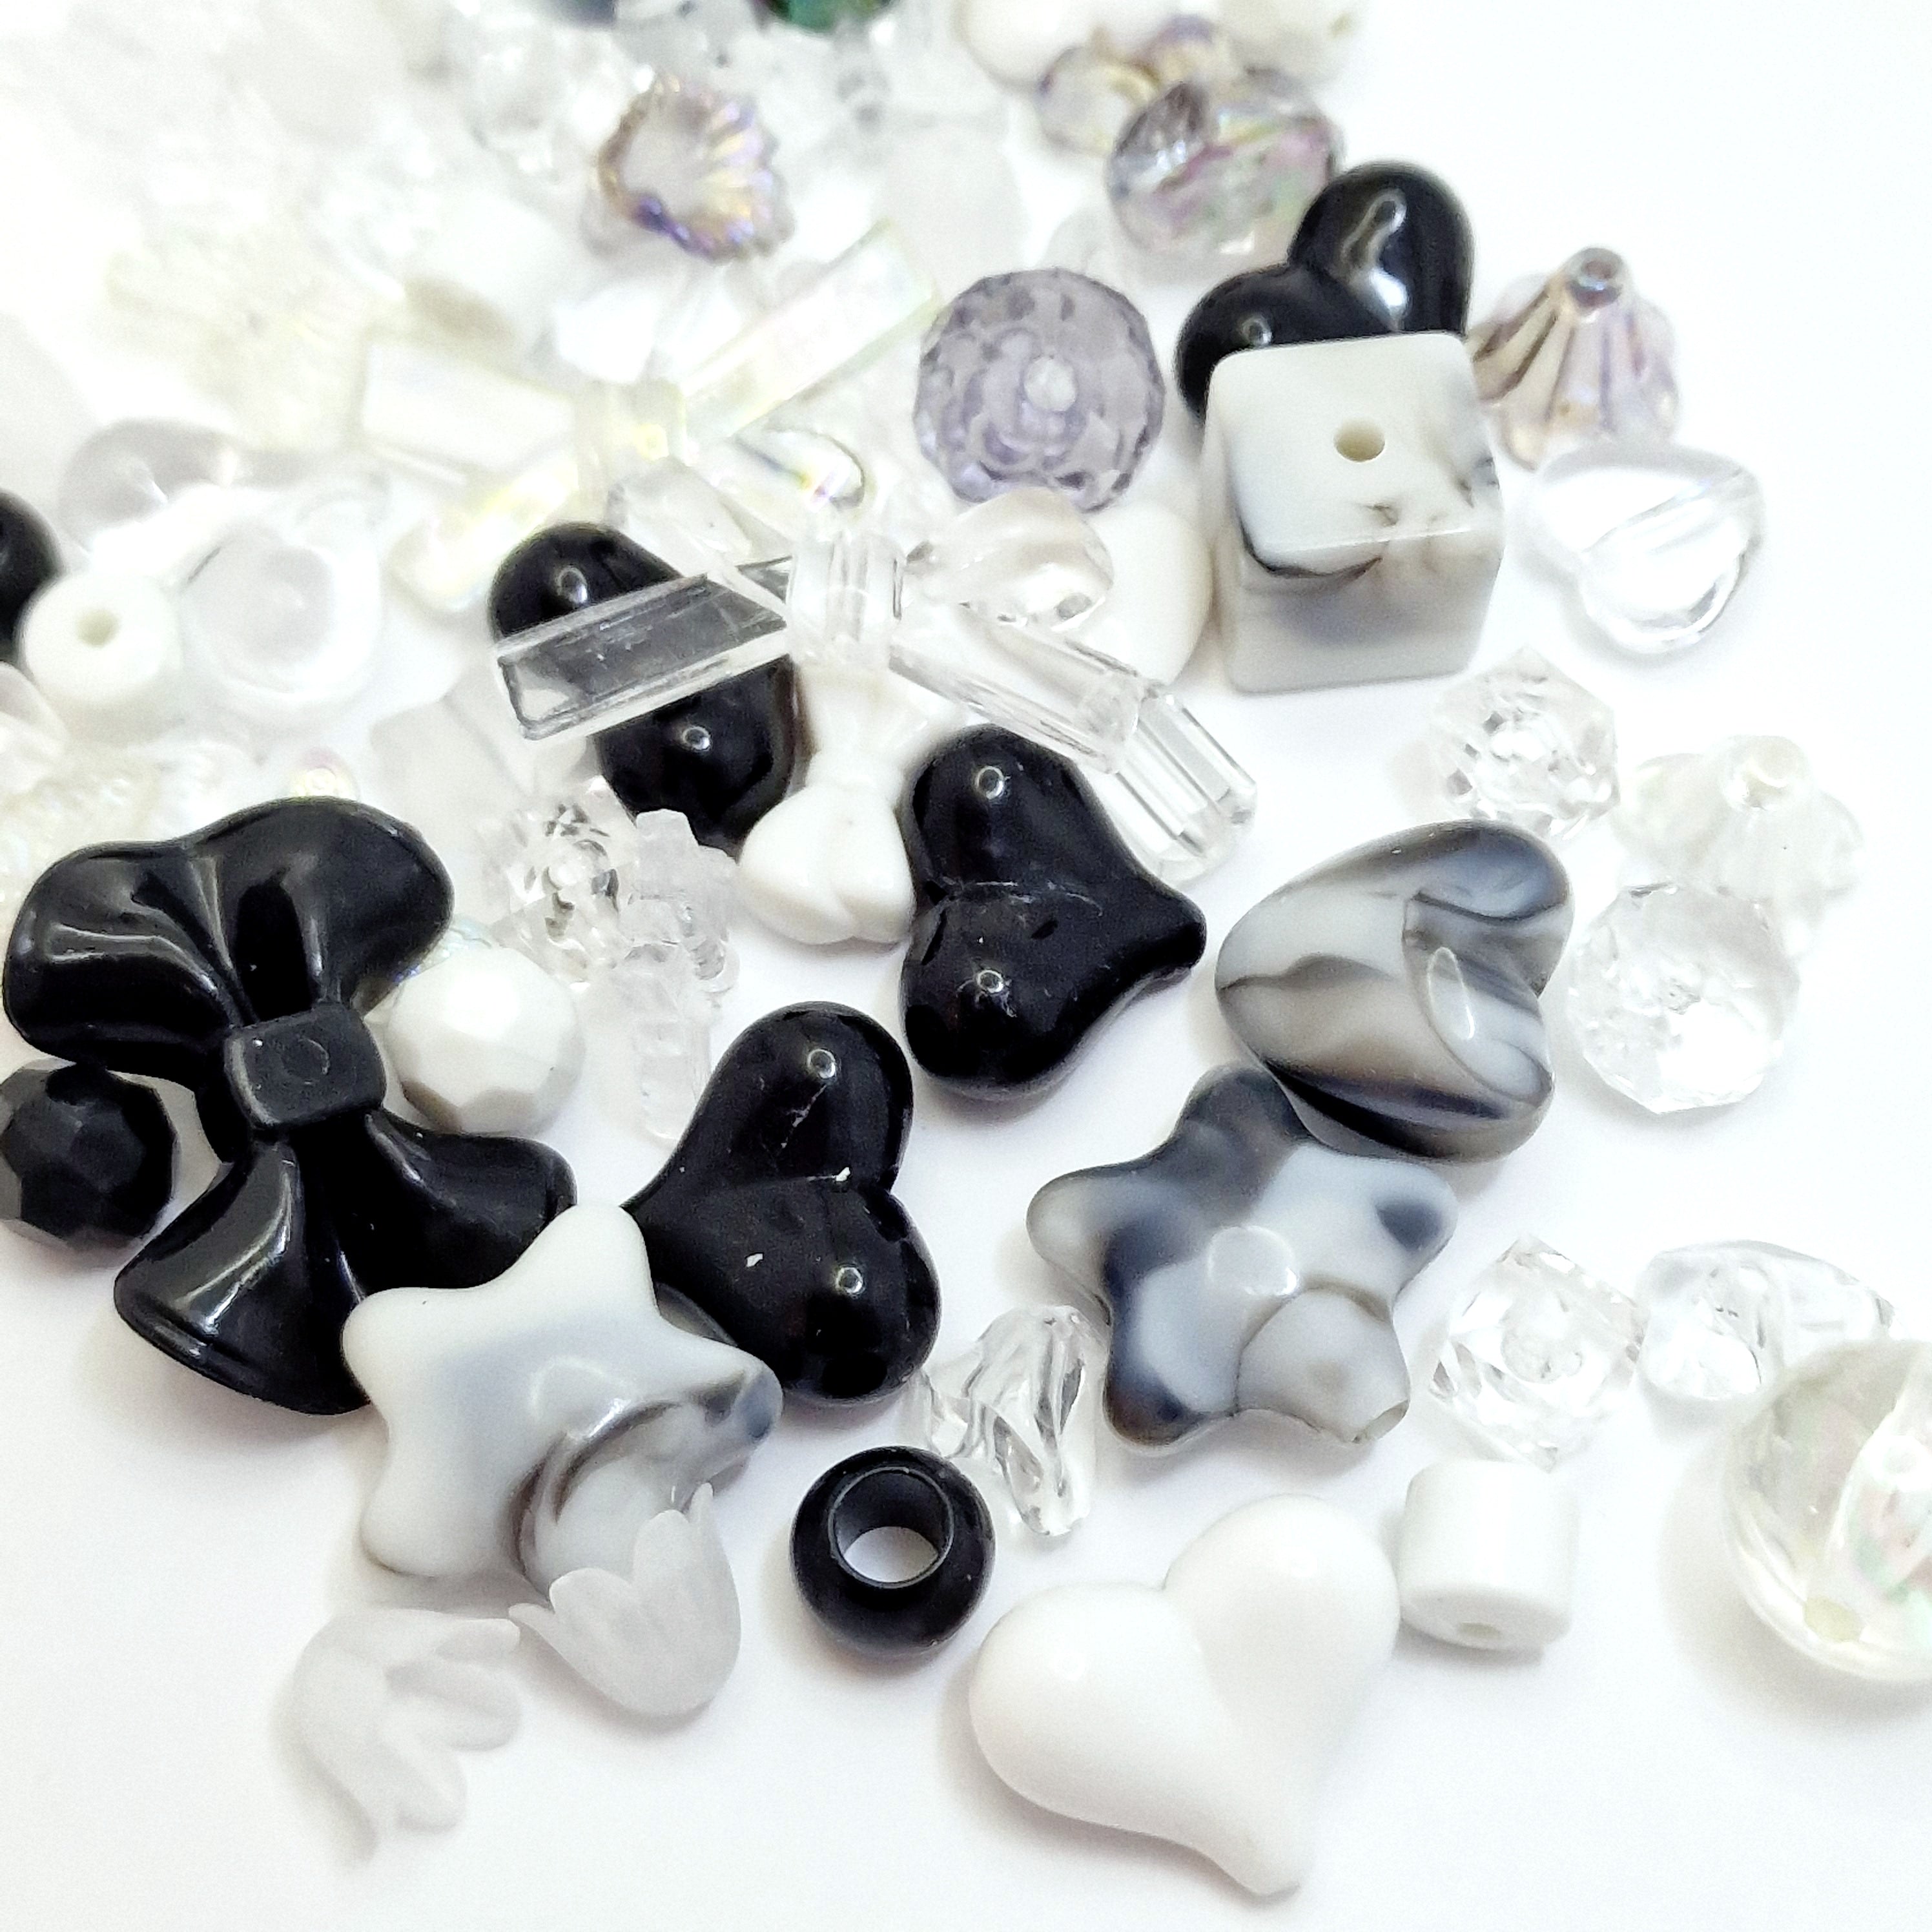 MajorCrafts 50g Black & White Theme Mixed Shapes & Sizes Acrylic Beads